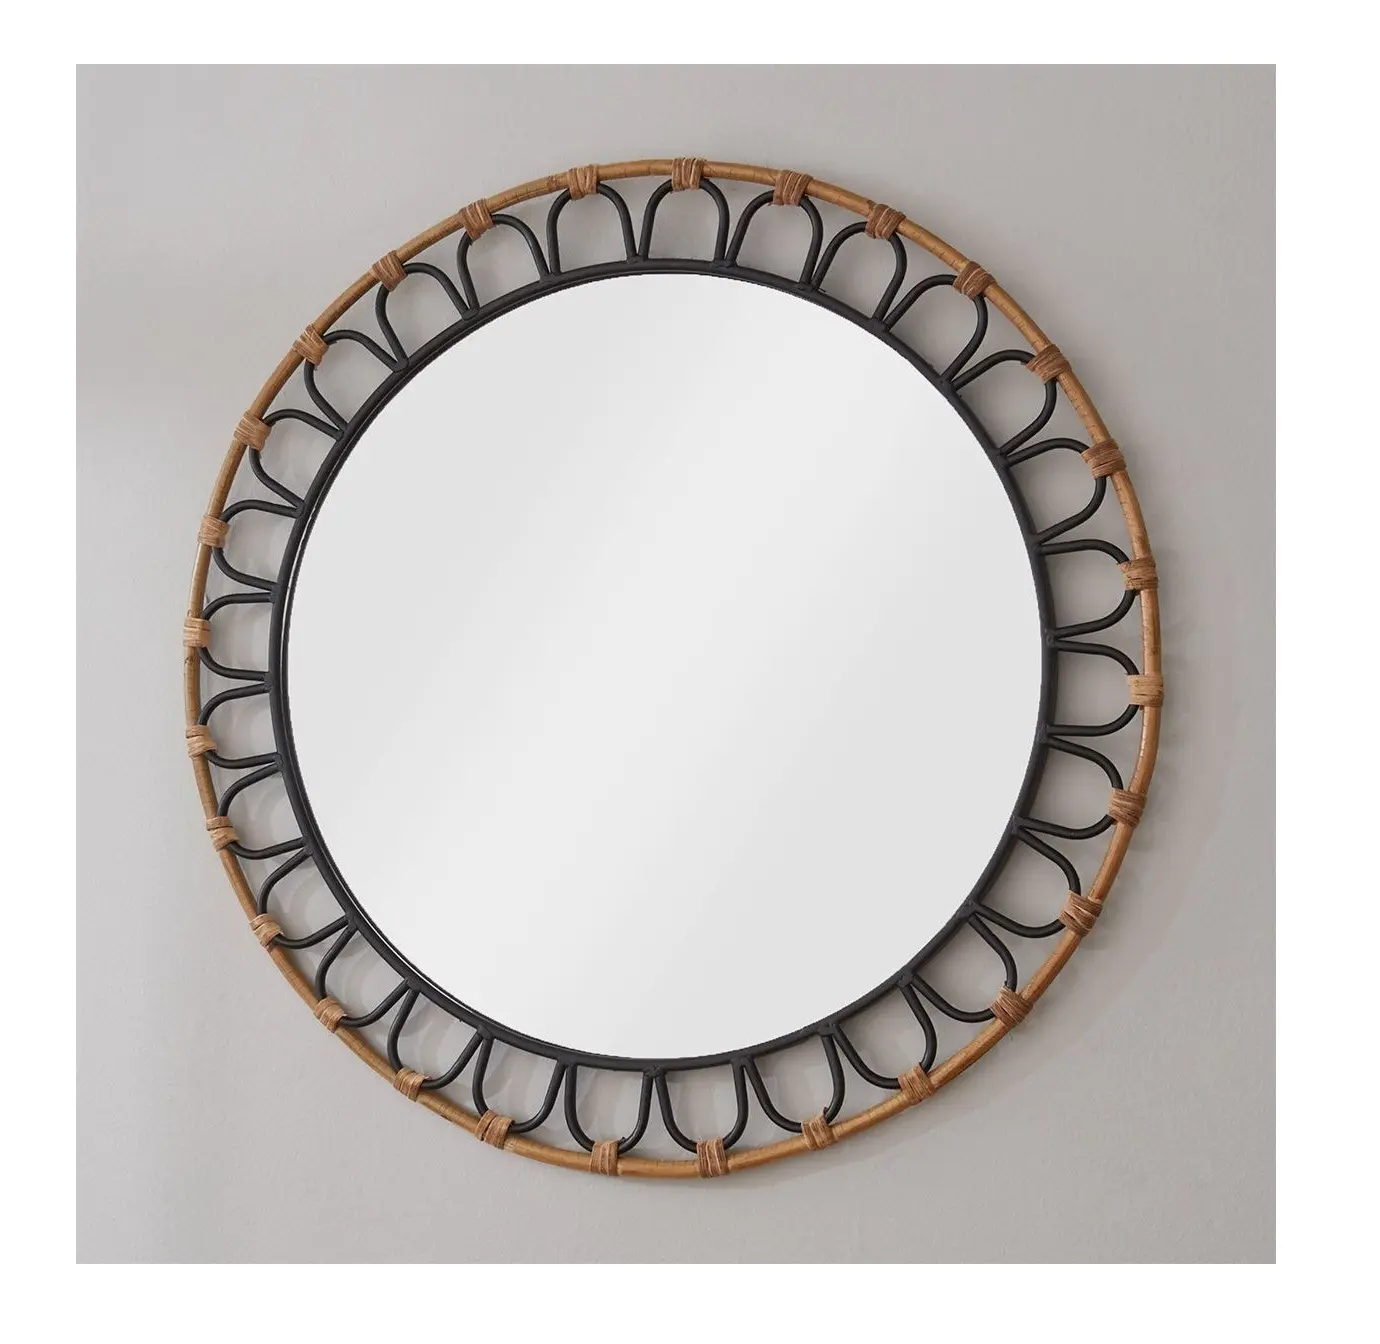 Espejo de pared de ratán forma redonda de gran tamaño Metal hierro y yute espejo colgante de pared diseño maravilloso Uso De restaurante hecho a mano